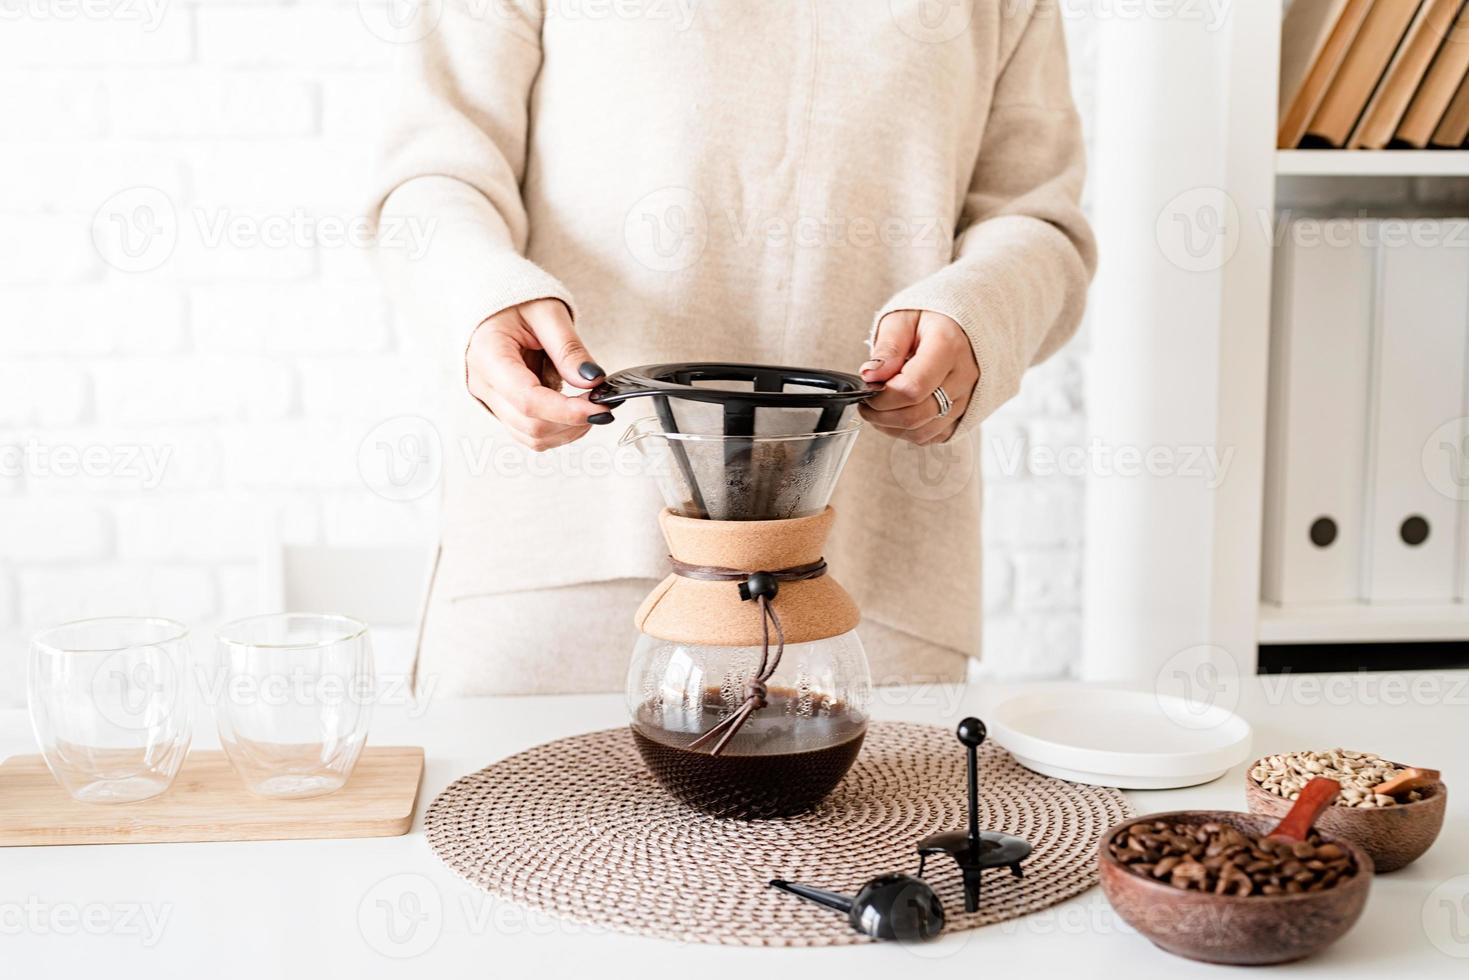 Mujer joven preparando café en una cafetera, vertiendo café en el vaso foto